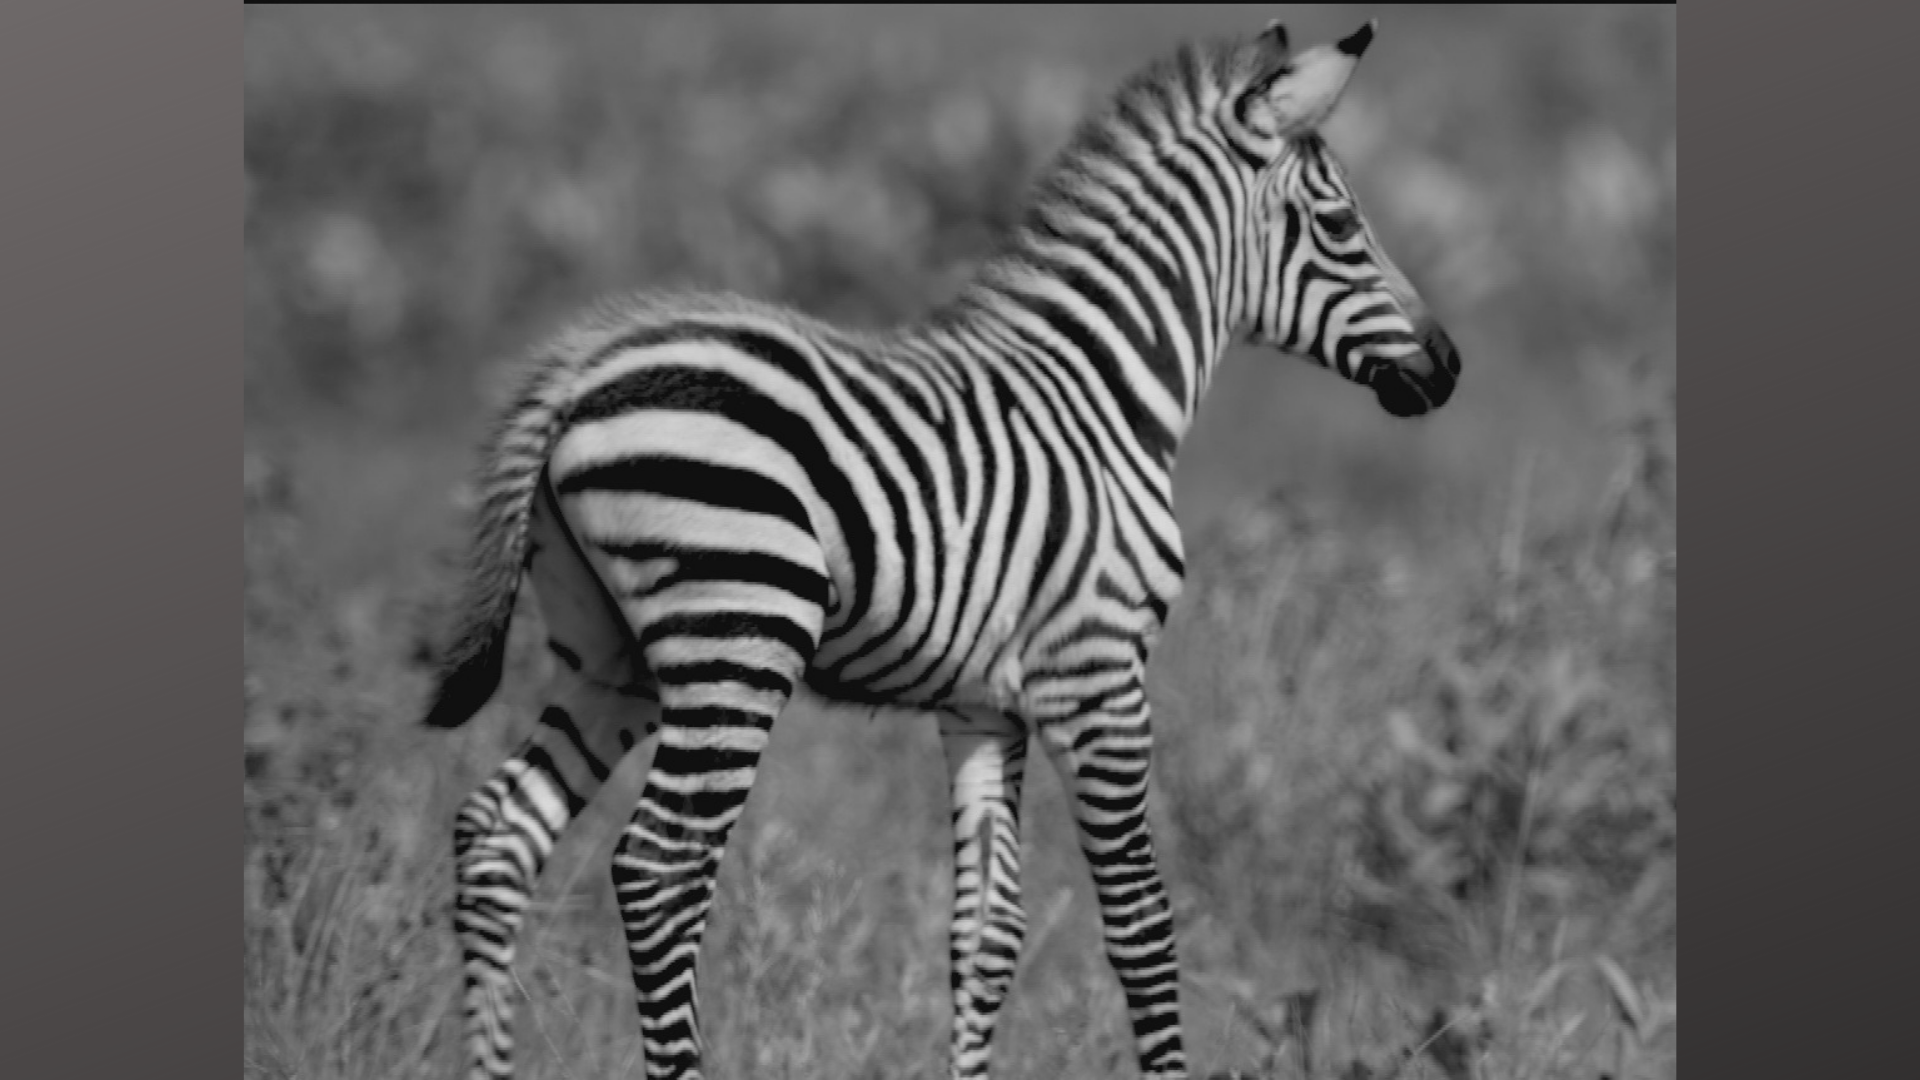 Punda the Zebra